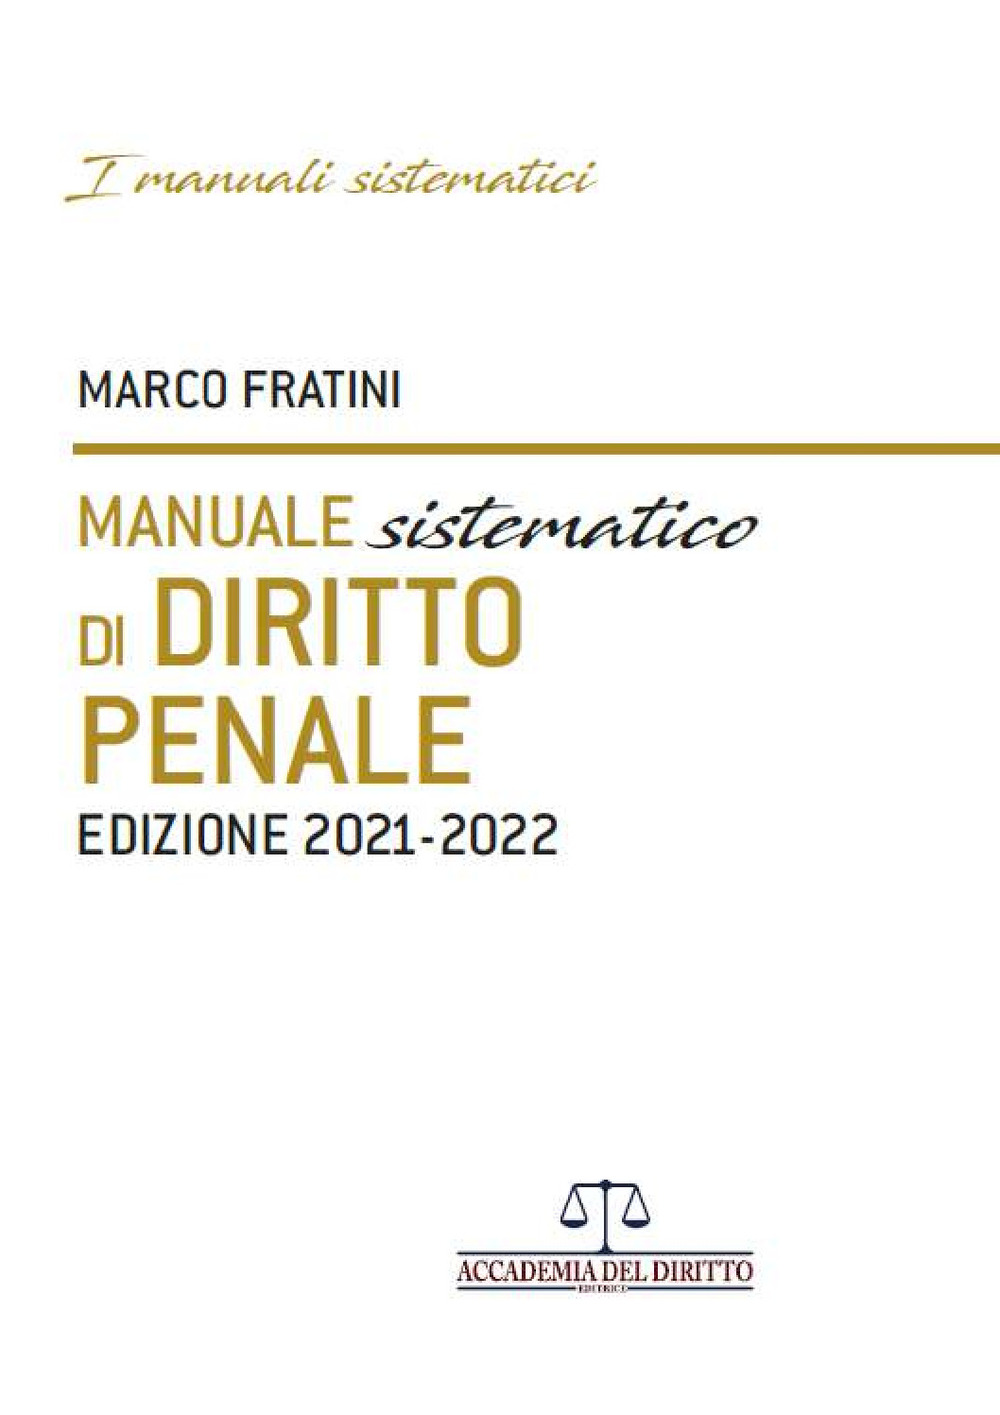 Manuale sistematico di diritto penale 2021-2022